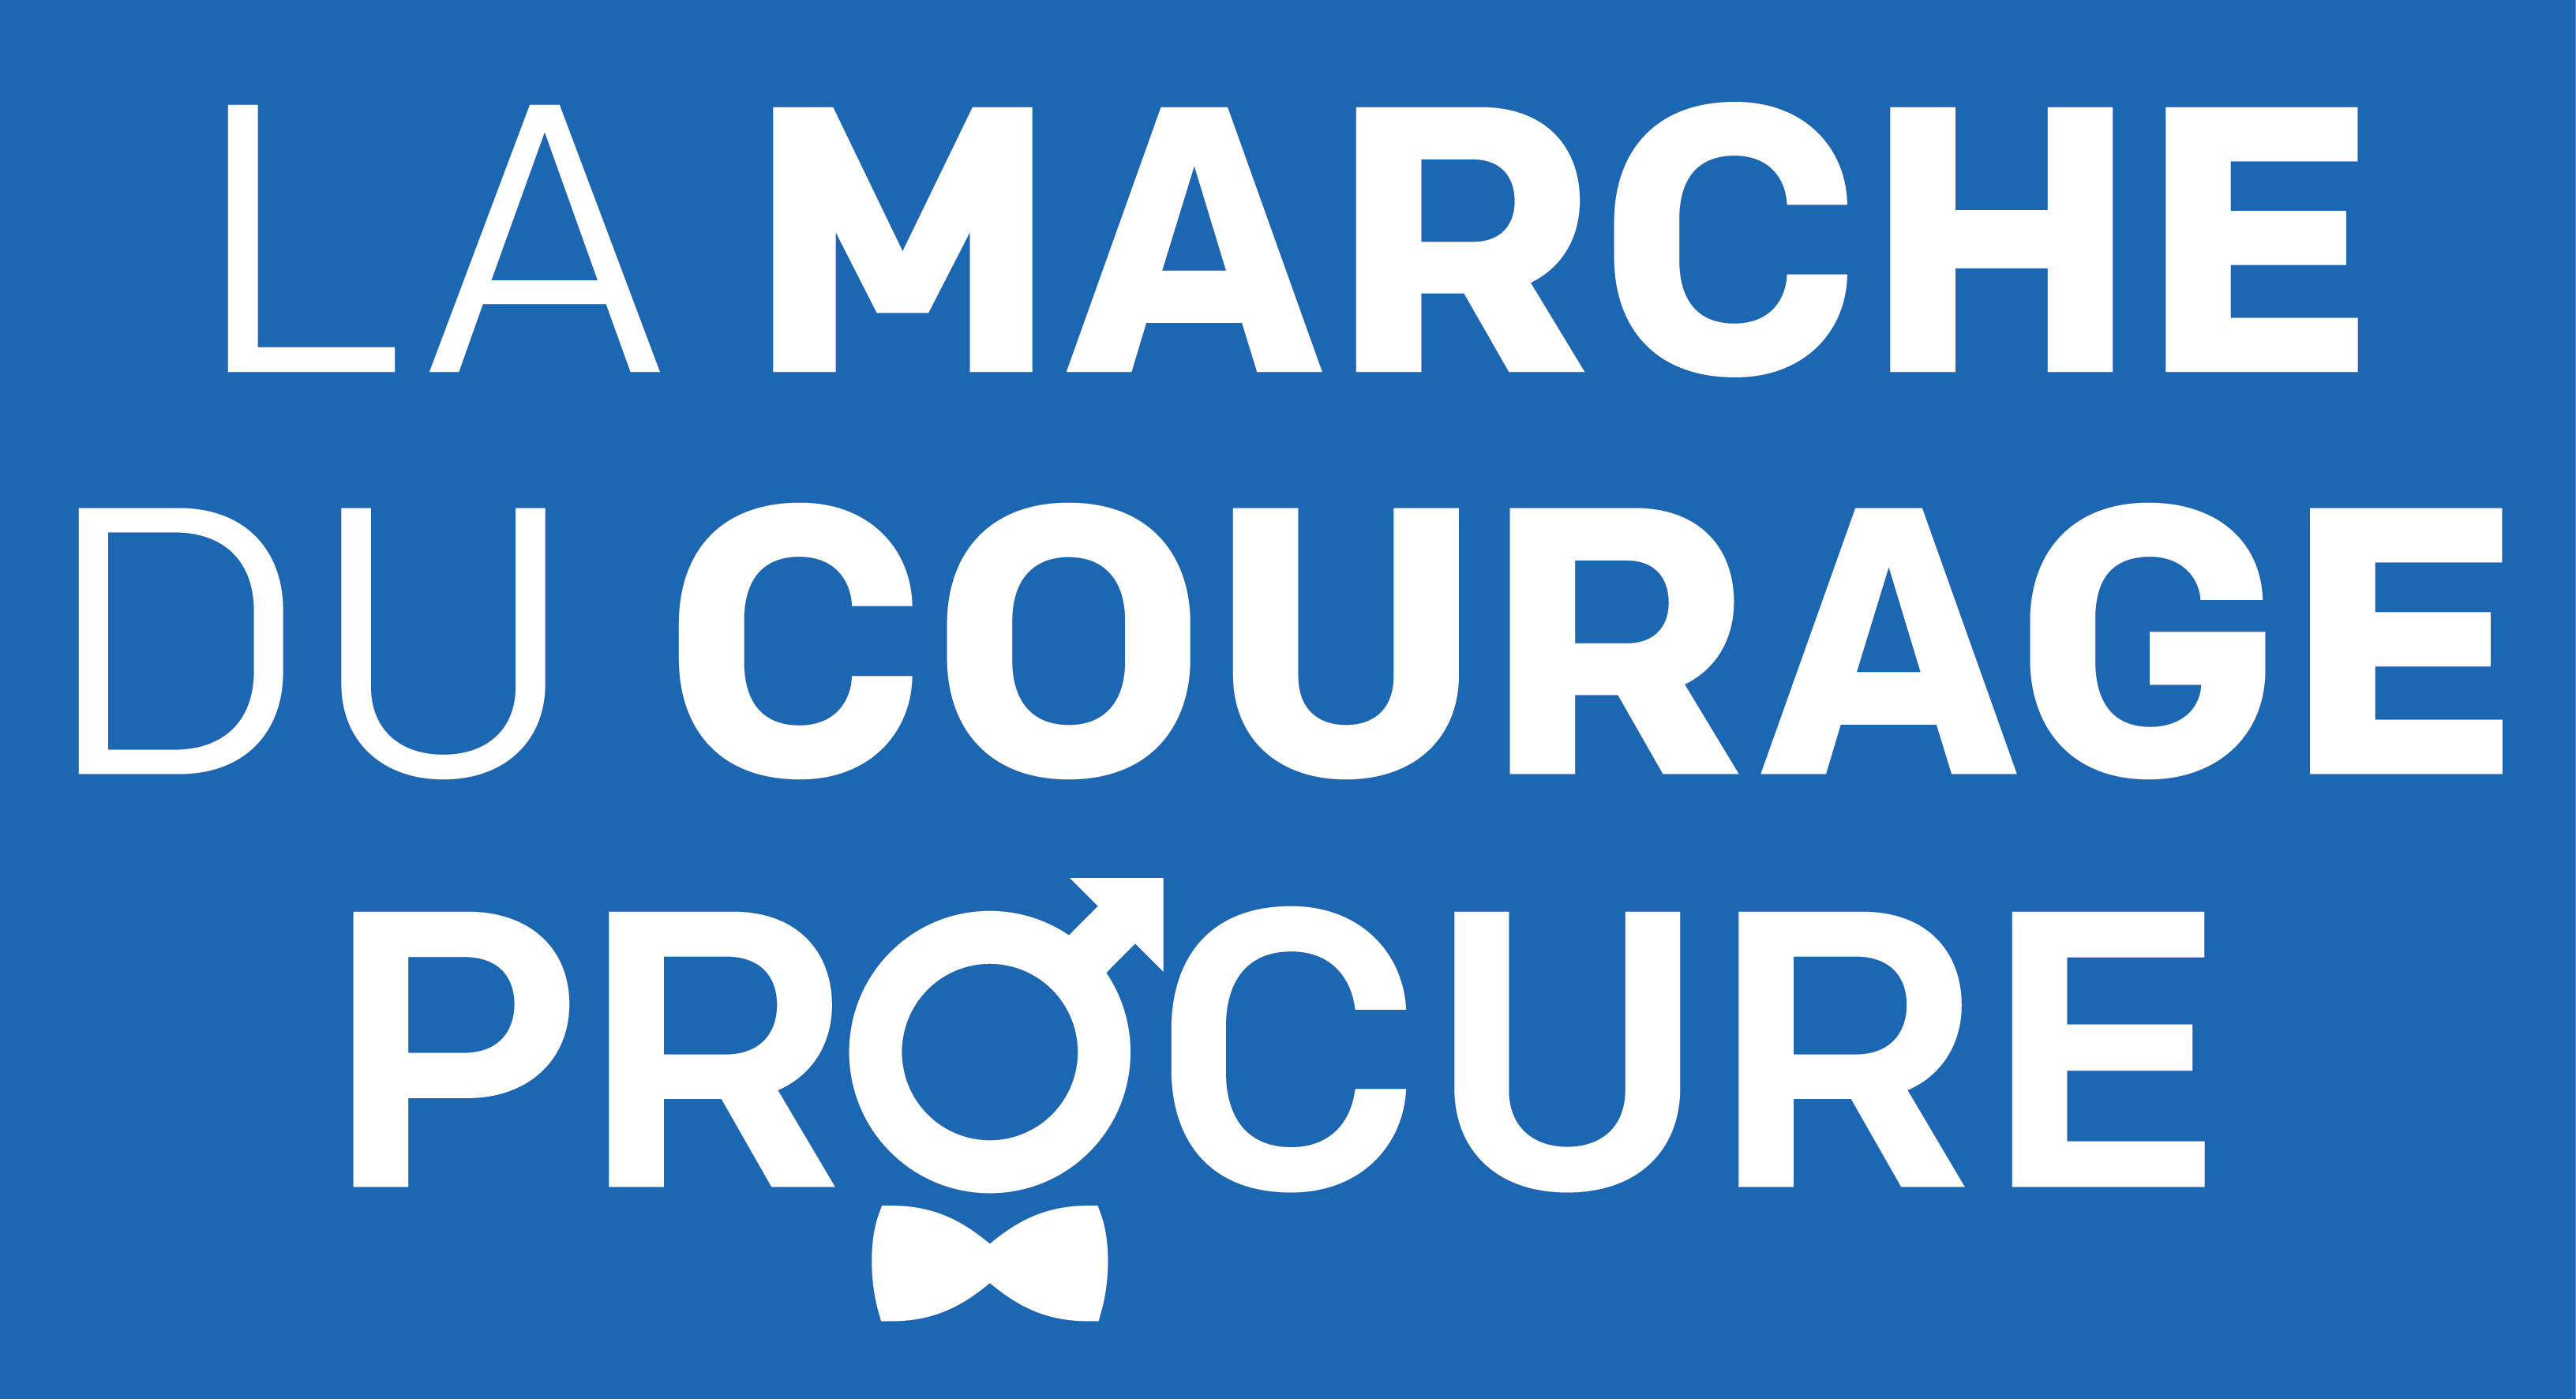 Marche Tour du Courage PROCURE-renverse